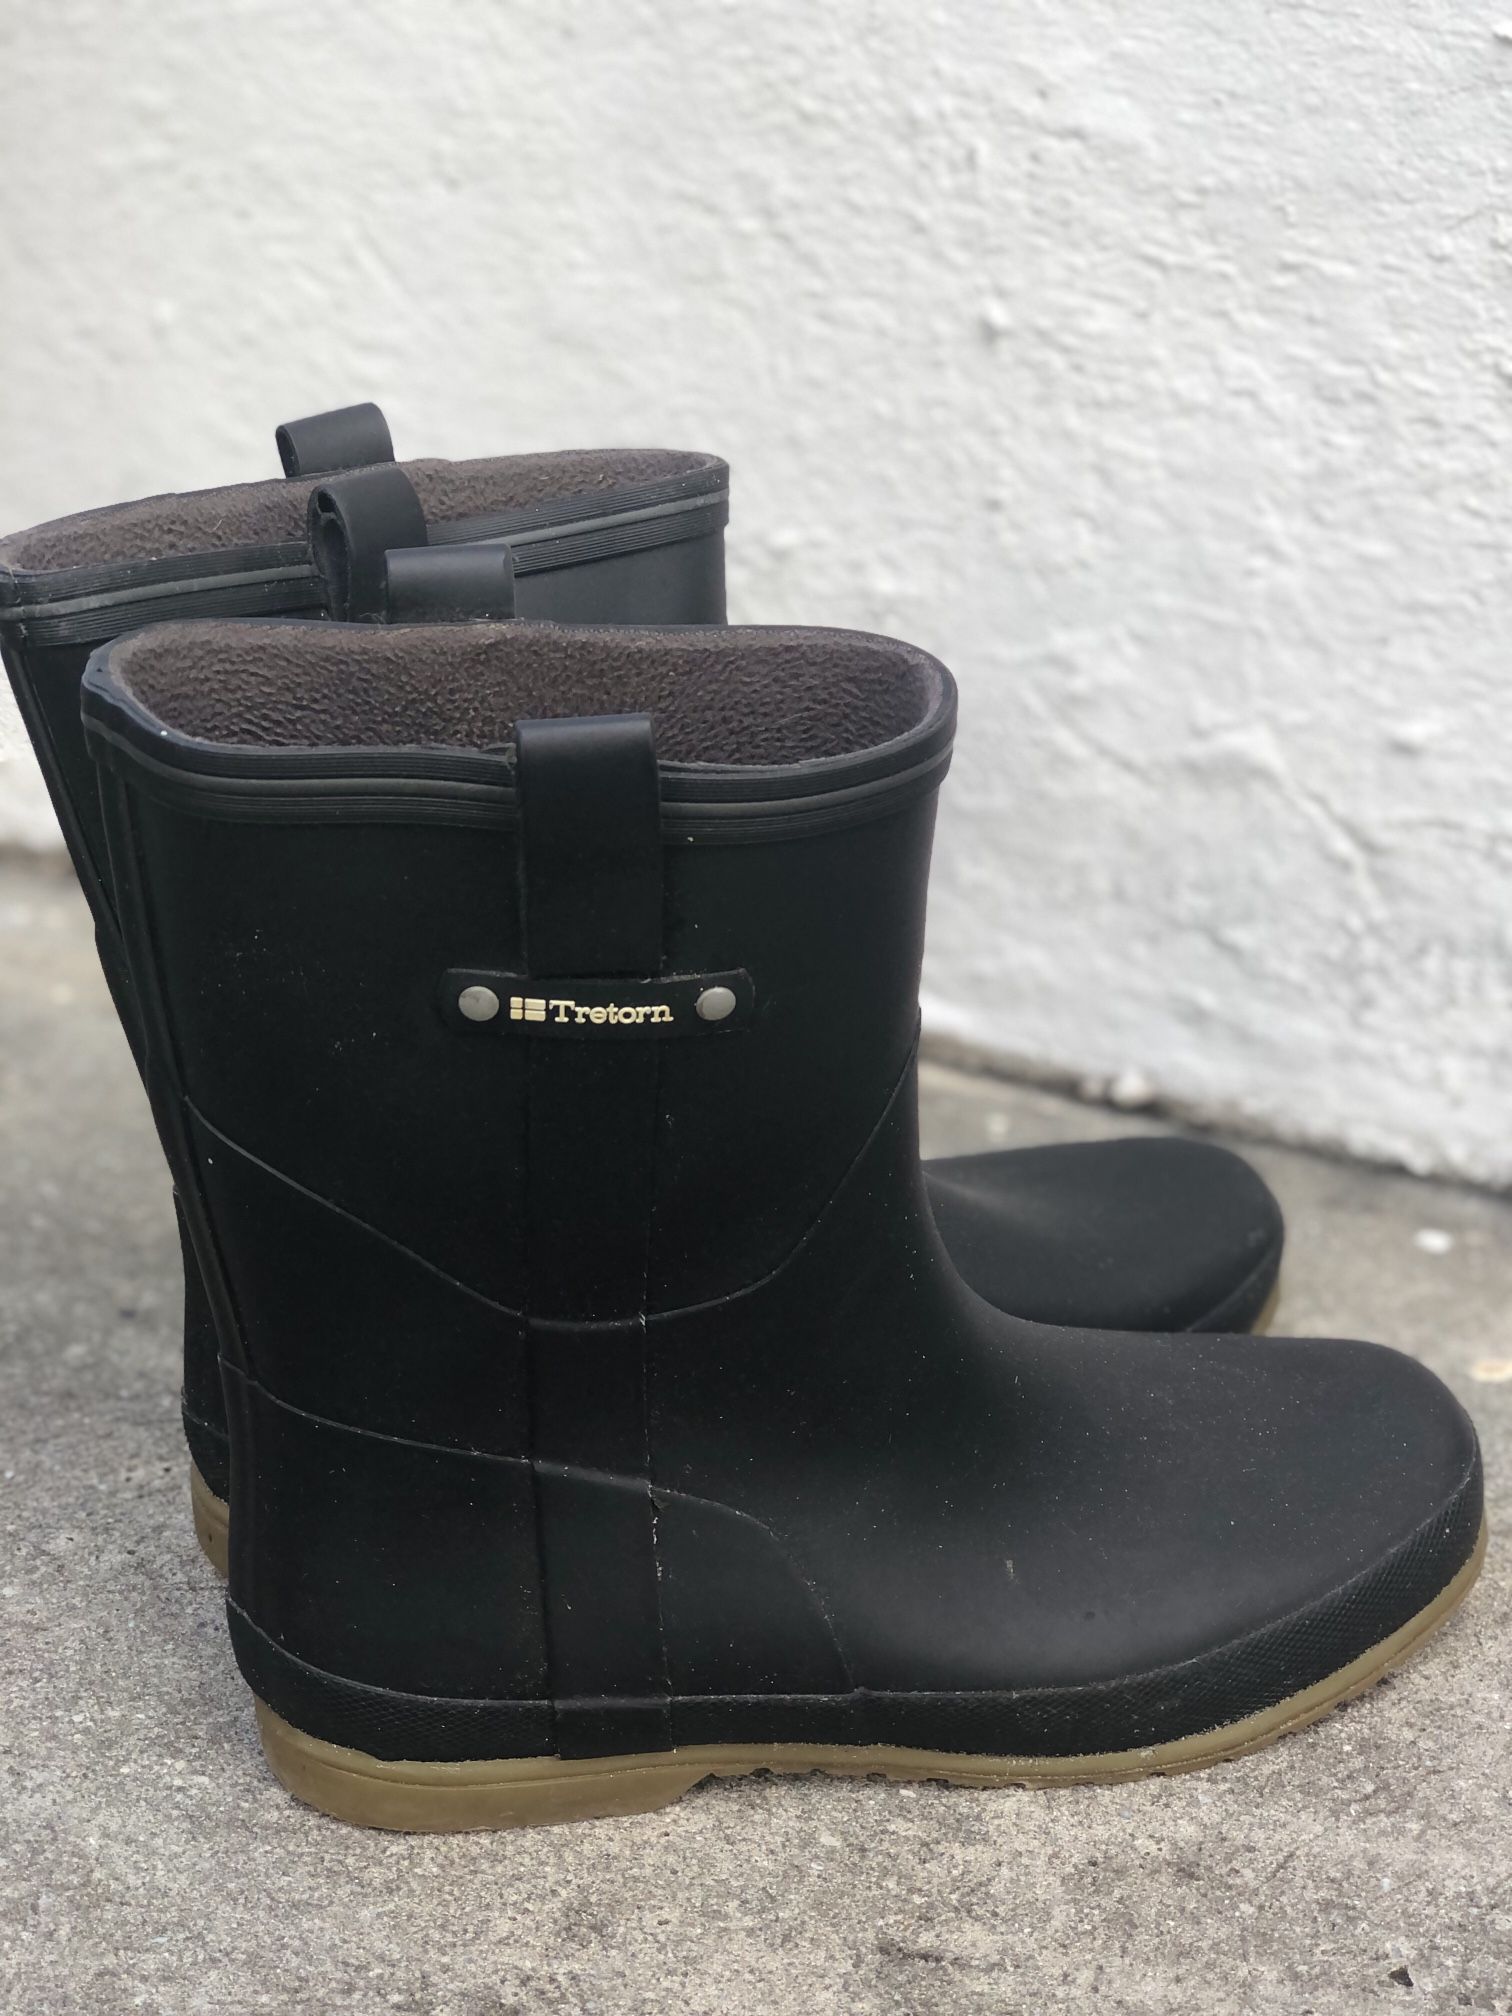 Trenton Rain boots Size 10